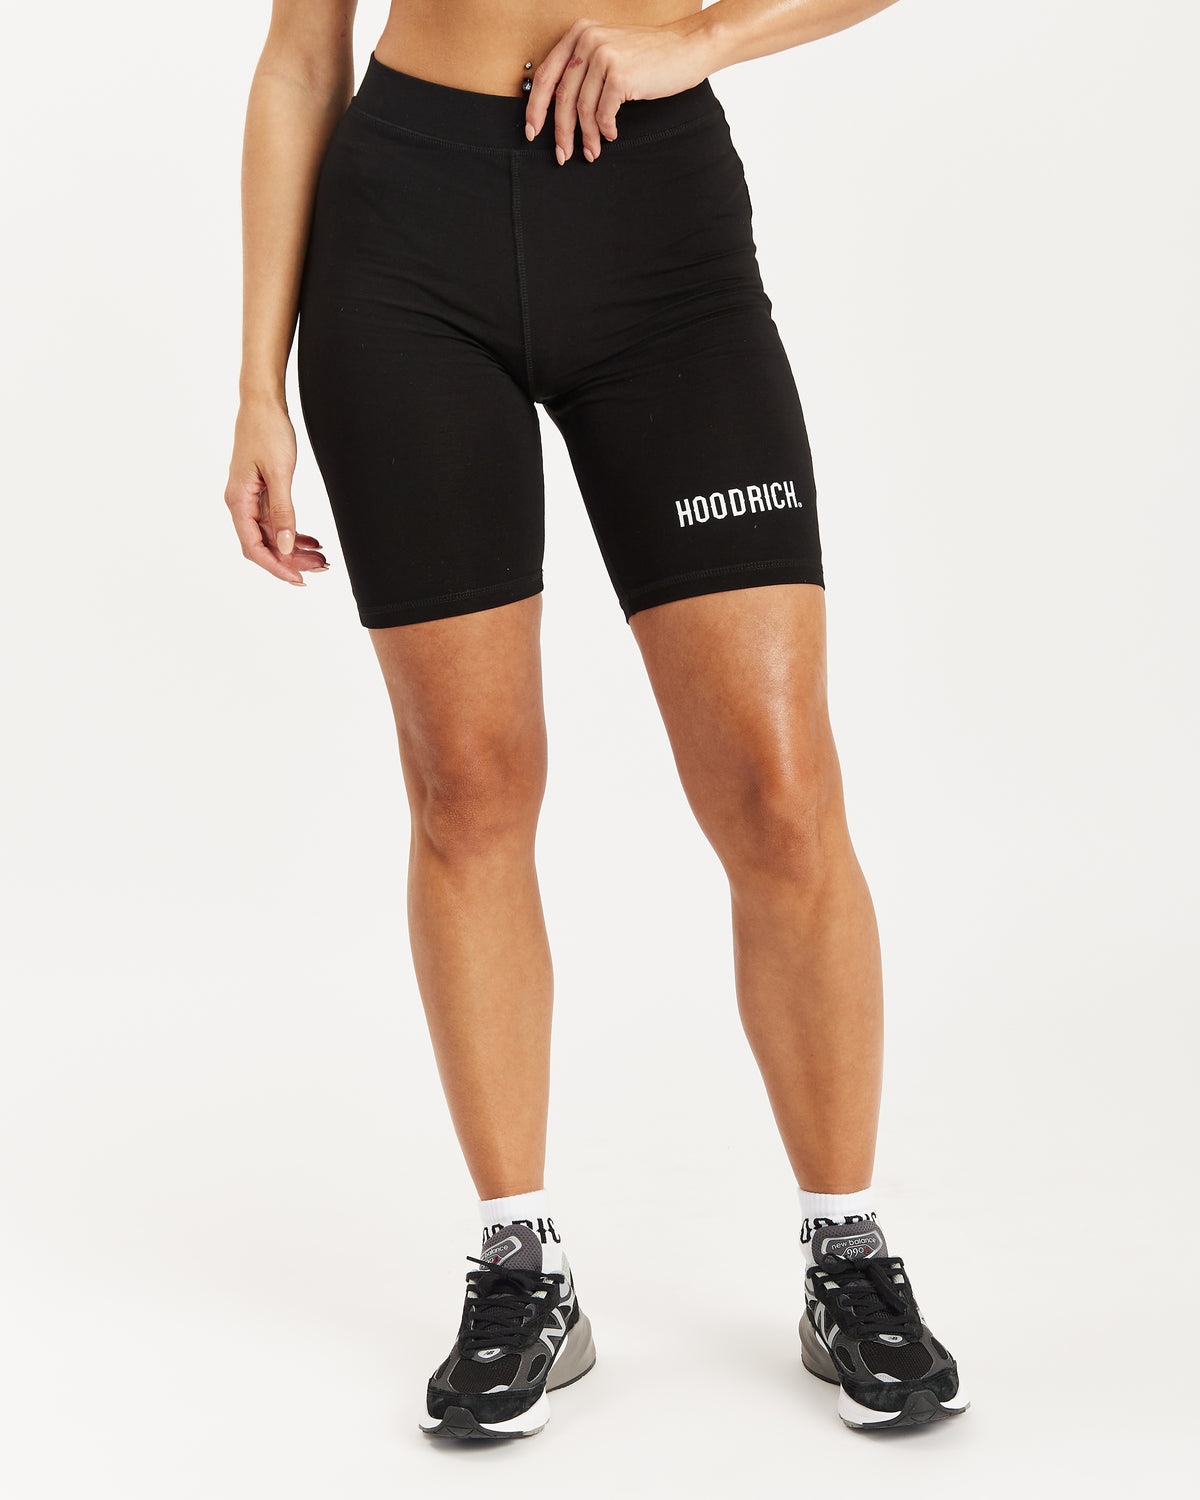 OG Core Cycling Shorts - Black/White